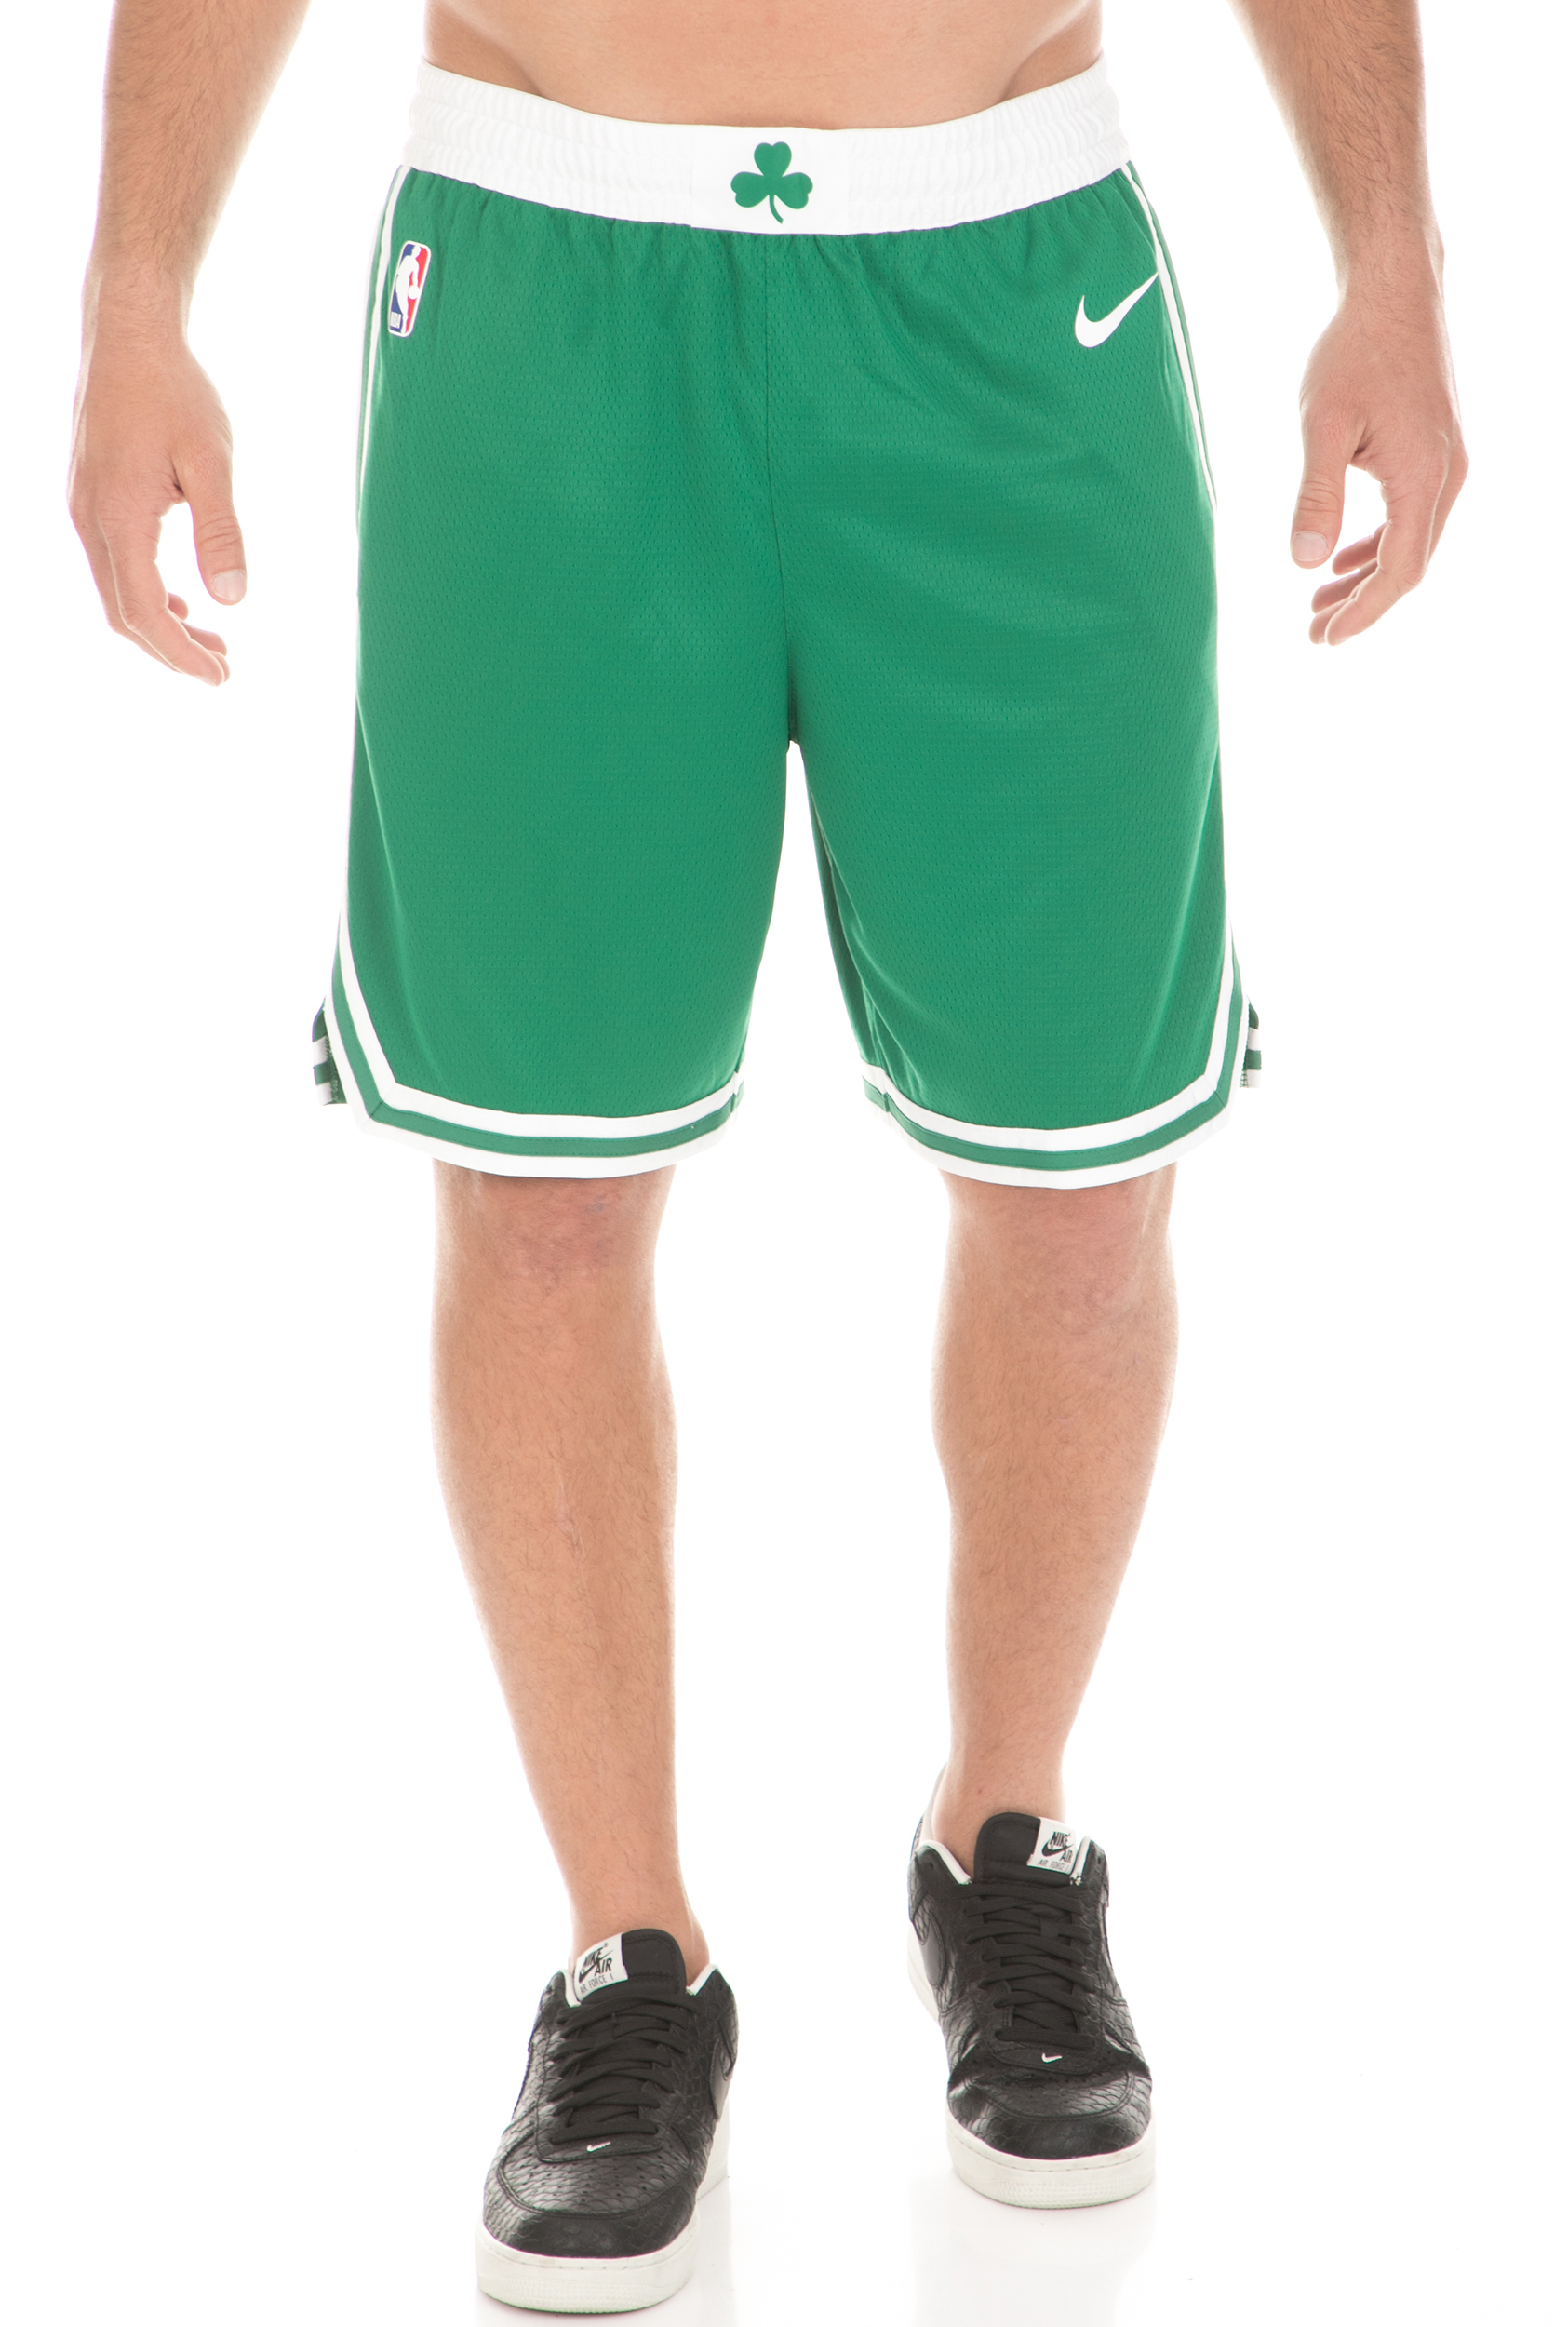 Ανδρικά/Ρούχα/Σορτς-Βερμούδες/Αθλητικά NIKE - Ανδρικό σορτς μπάσκετ NIKE Boston Celtics πράσινο